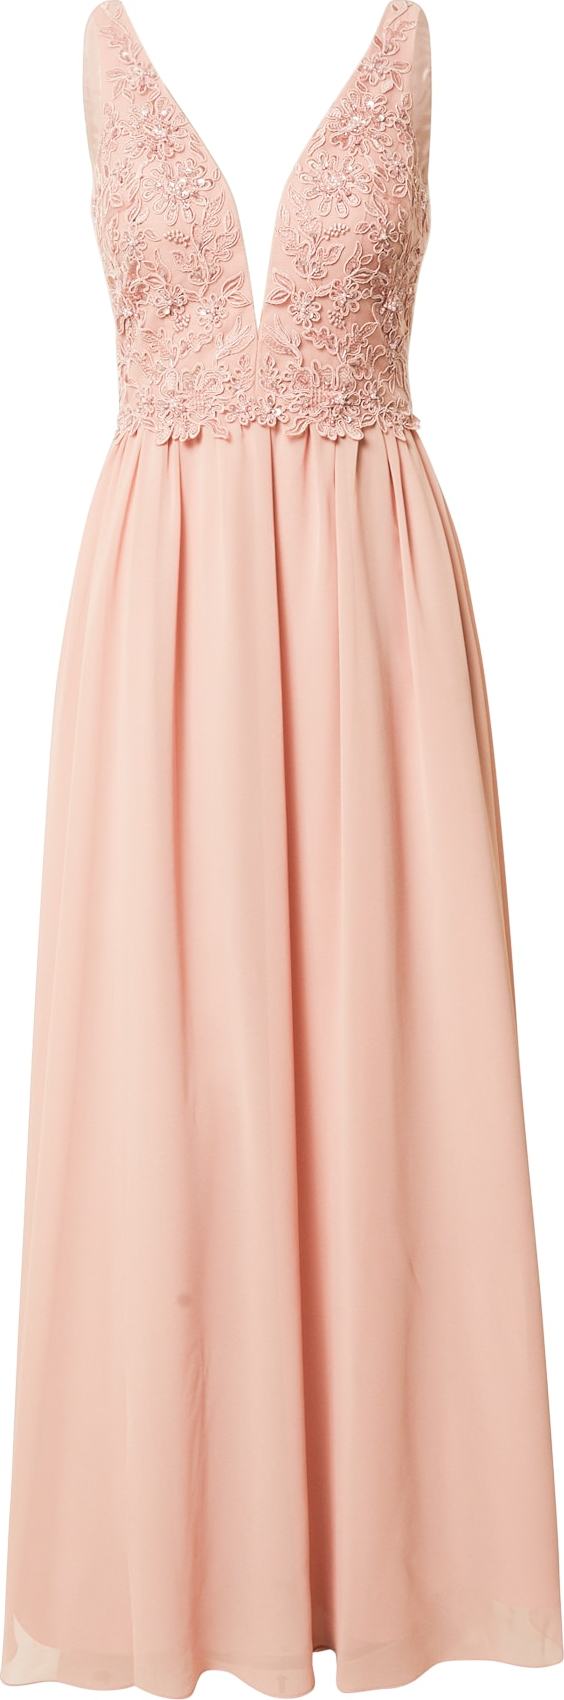 Unique Společenské šaty růžová